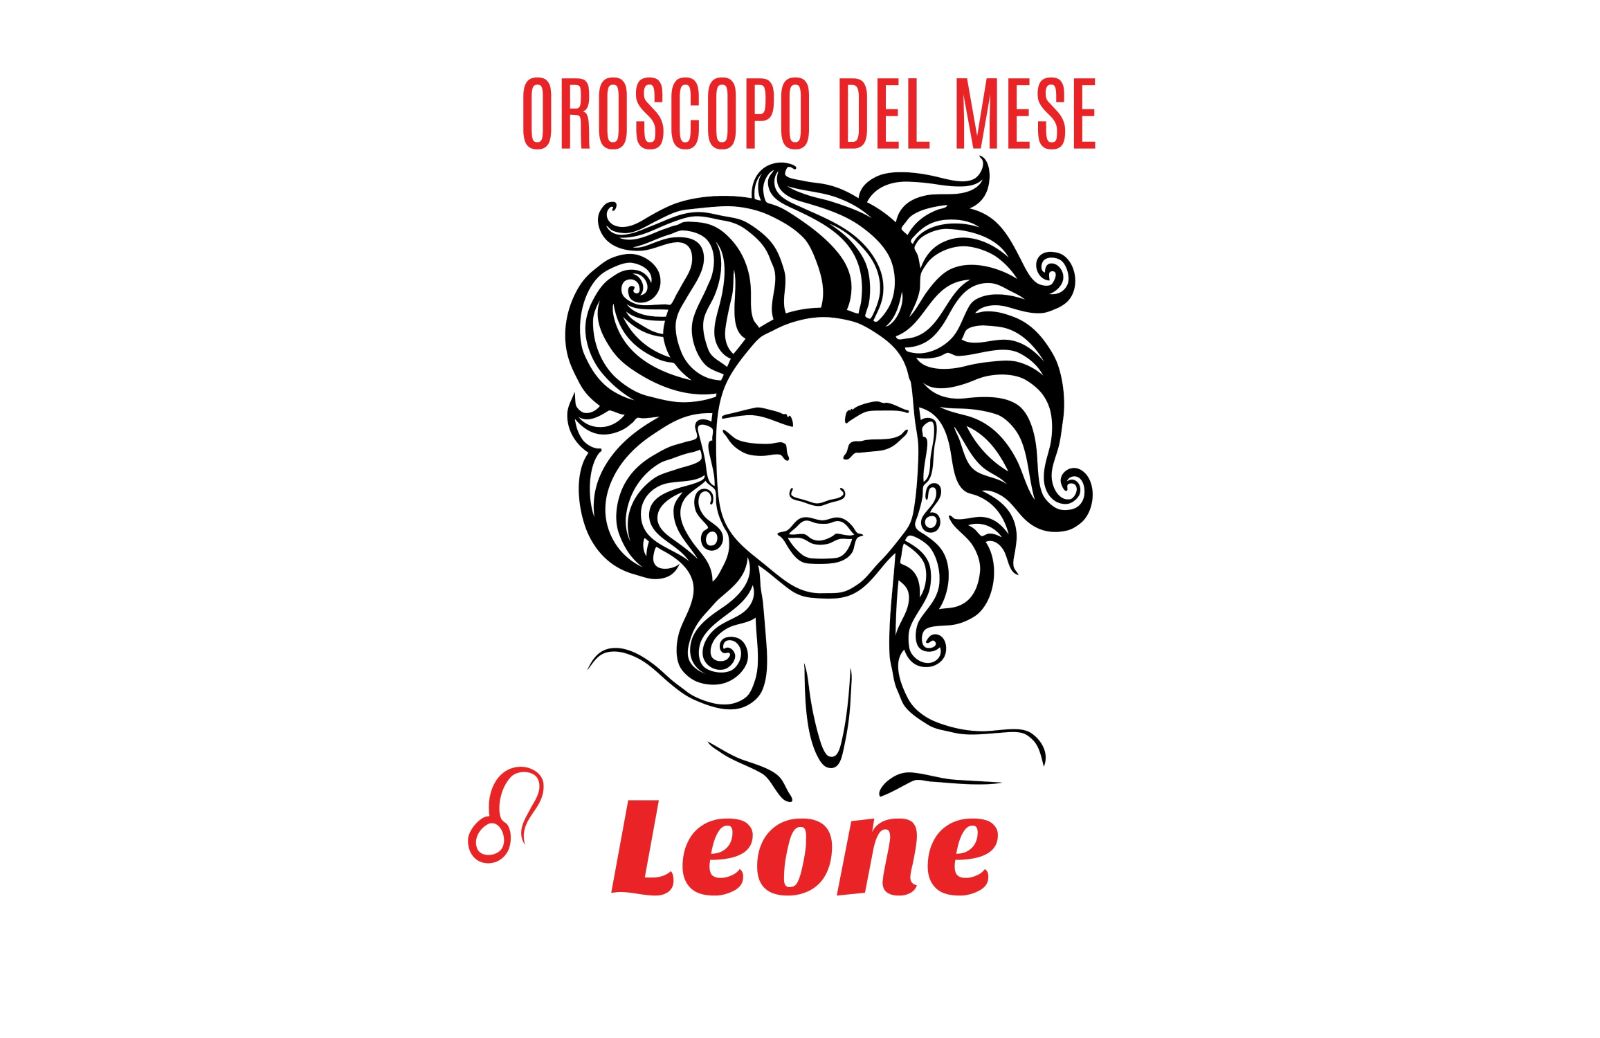 Oroscopo del mese: Leone - maggio 2018